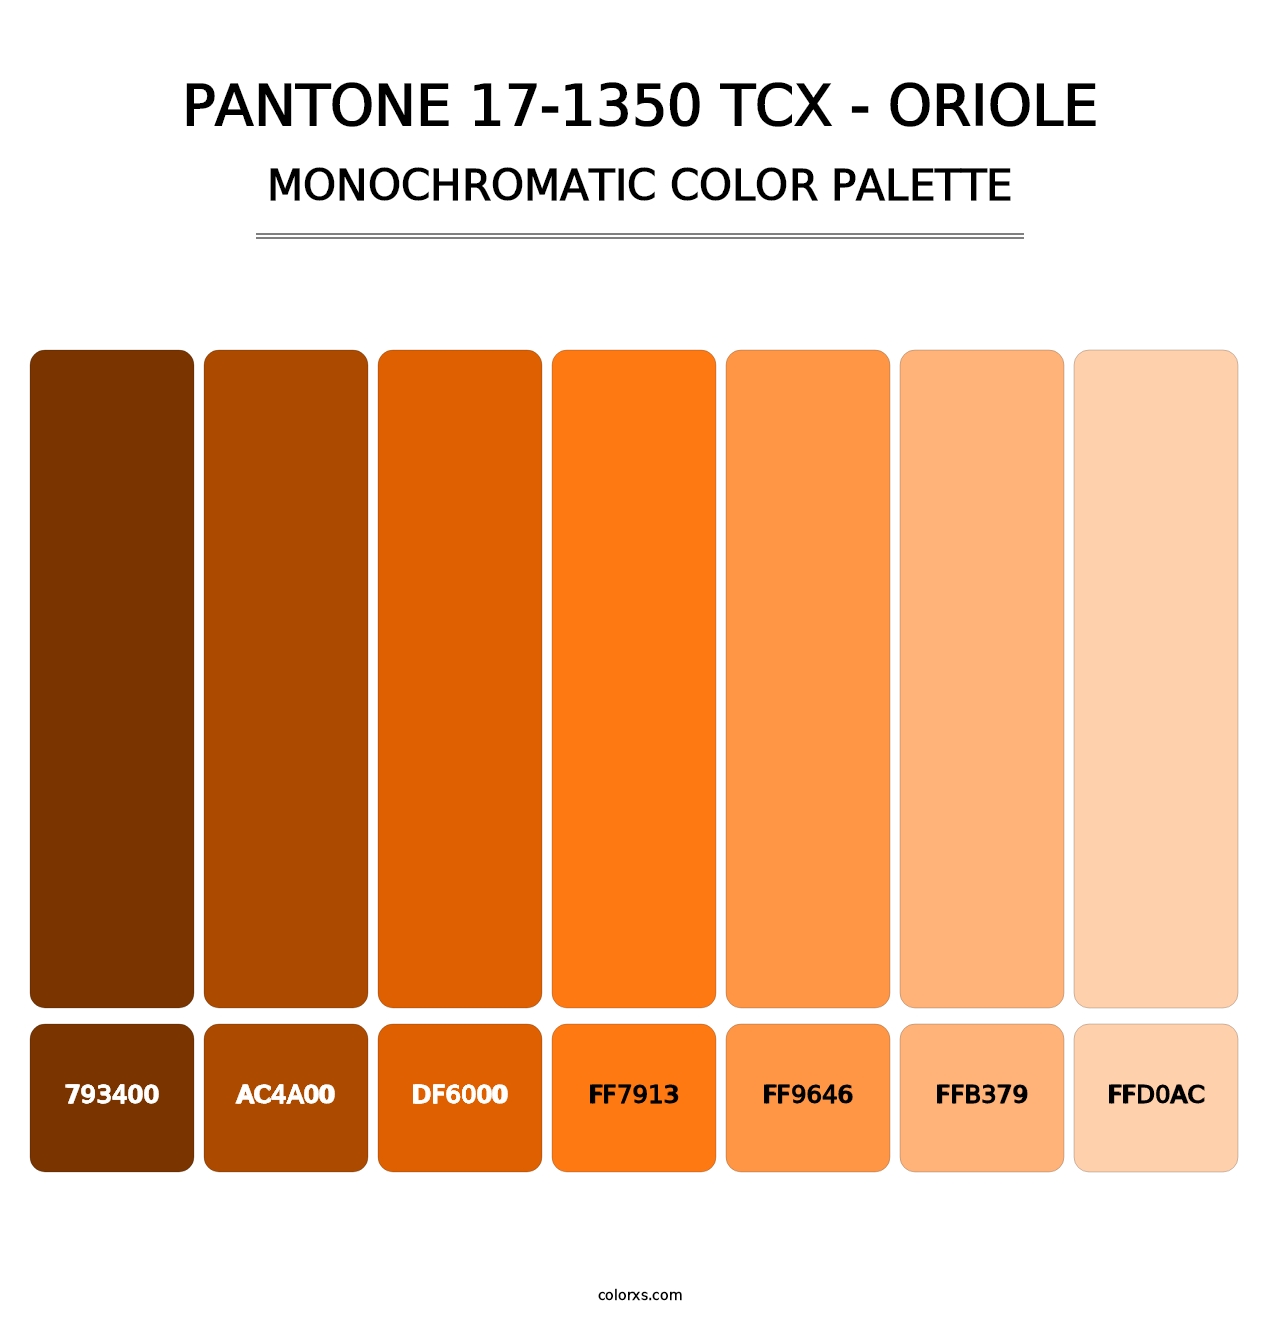 PANTONE 17-1350 TCX - Oriole - Monochromatic Color Palette